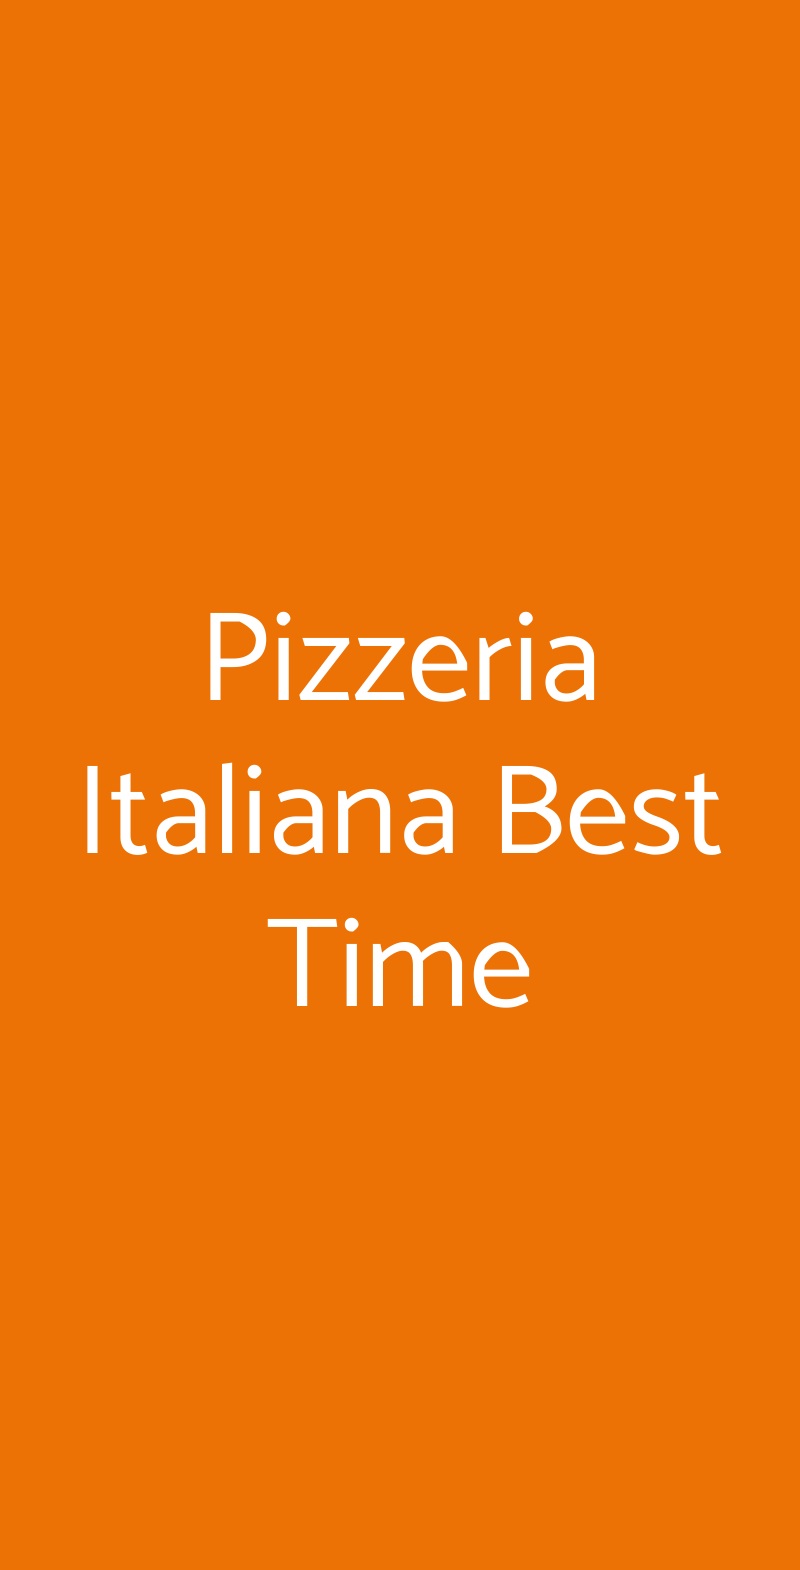 Pizzeria Italiana Best Time Milano menù 1 pagina